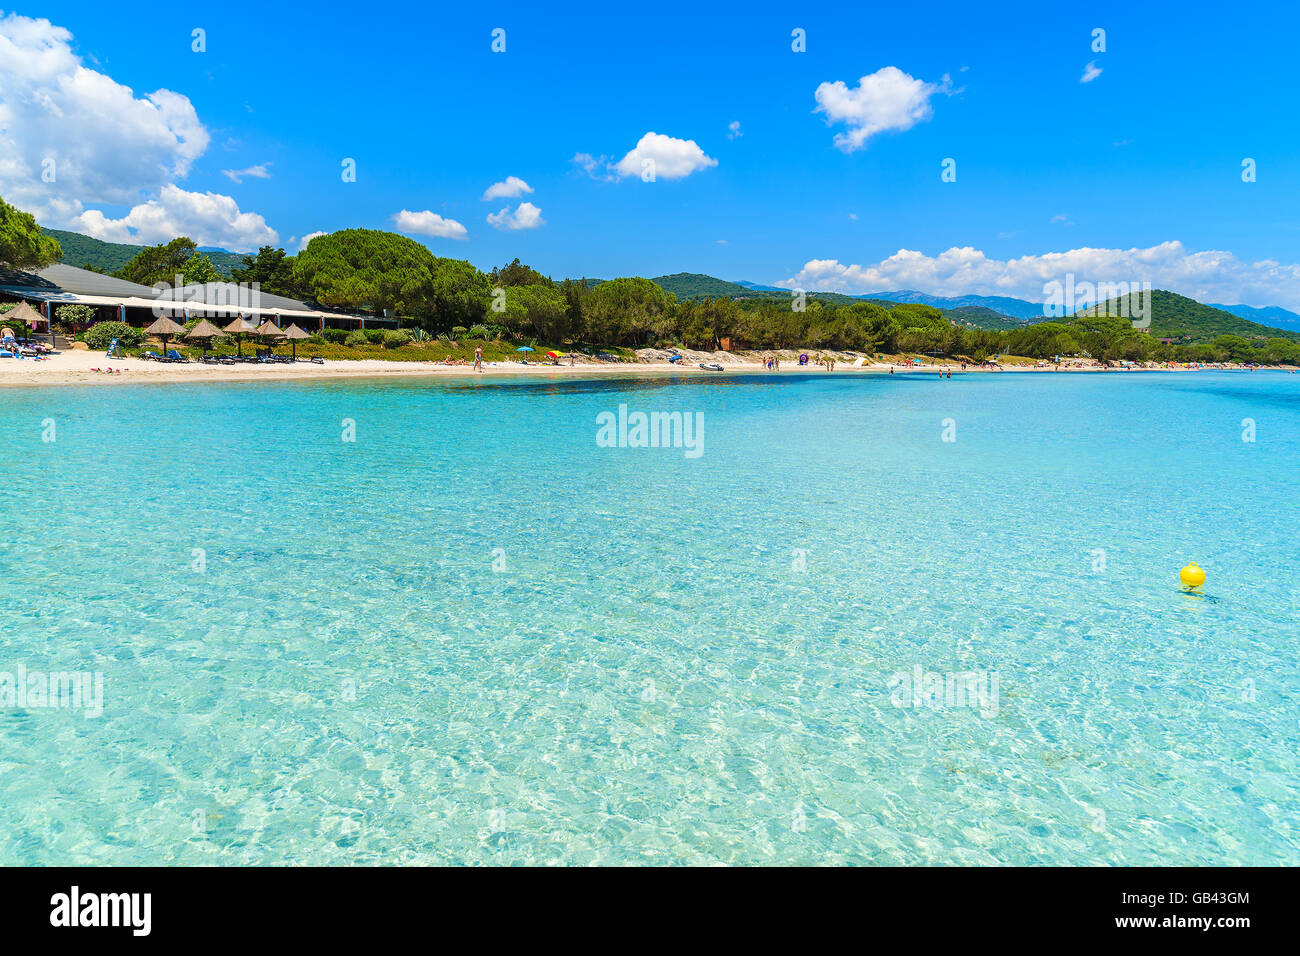 Une vue de la plage de Santa Giulia avec crystal clear mer turquoise de l'eau, Corse, France Banque D'Images